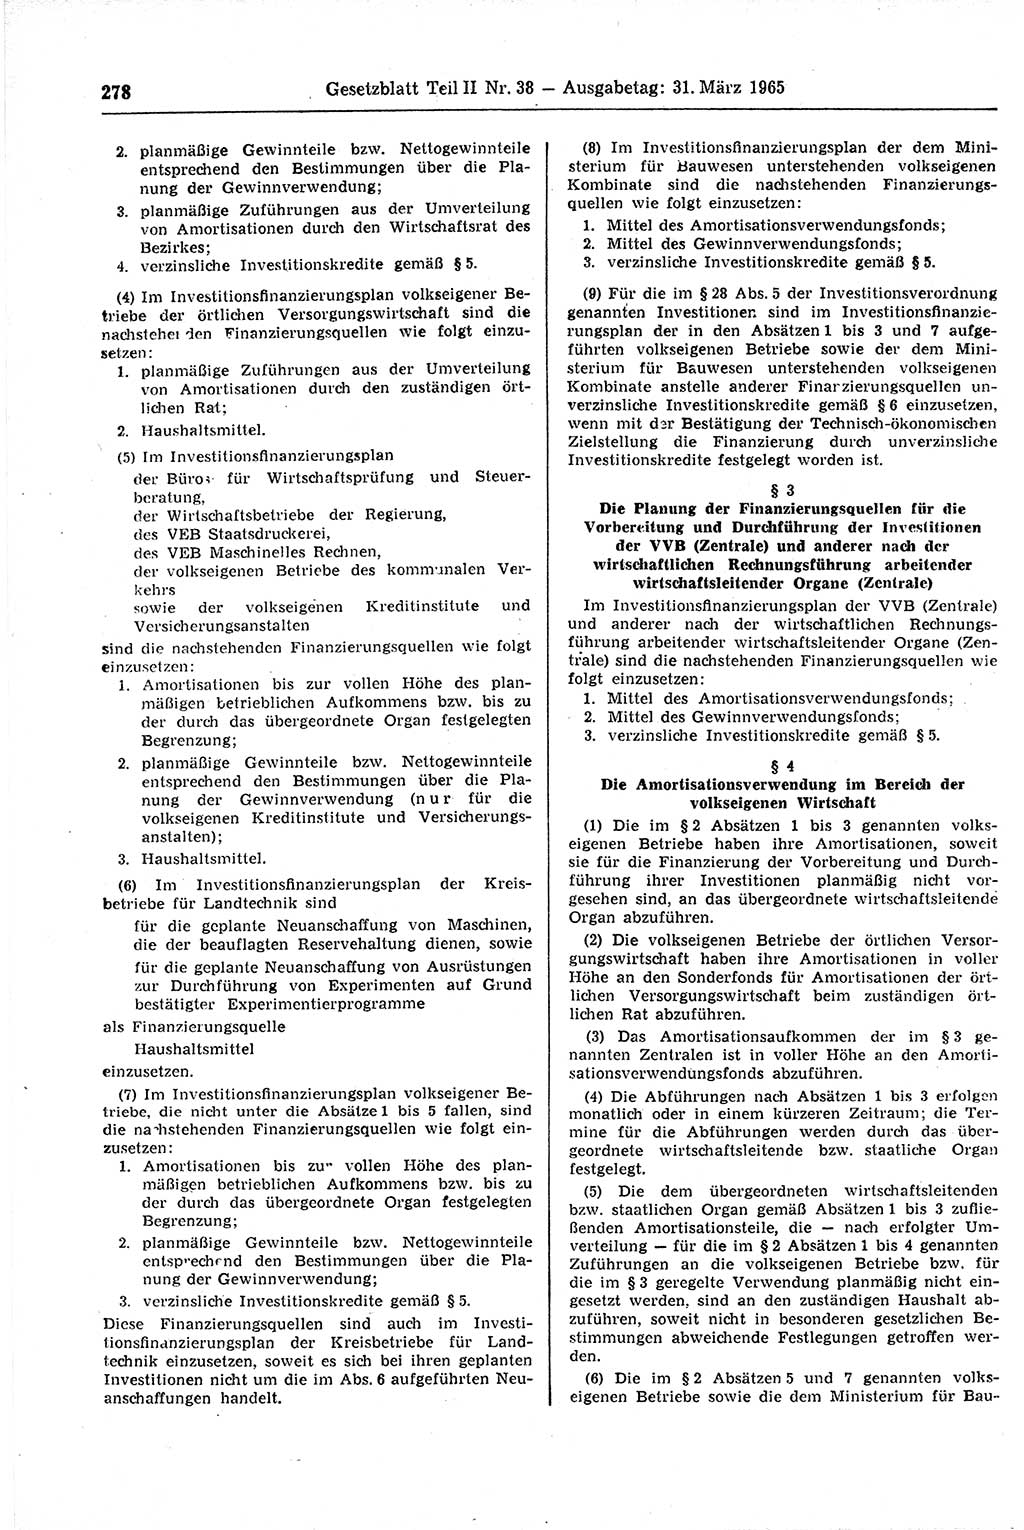 Gesetzblatt (GBl.) der Deutschen Demokratischen Republik (DDR) Teil ⅠⅠ 1965, Seite 278 (GBl. DDR ⅠⅠ 1965, S. 278)